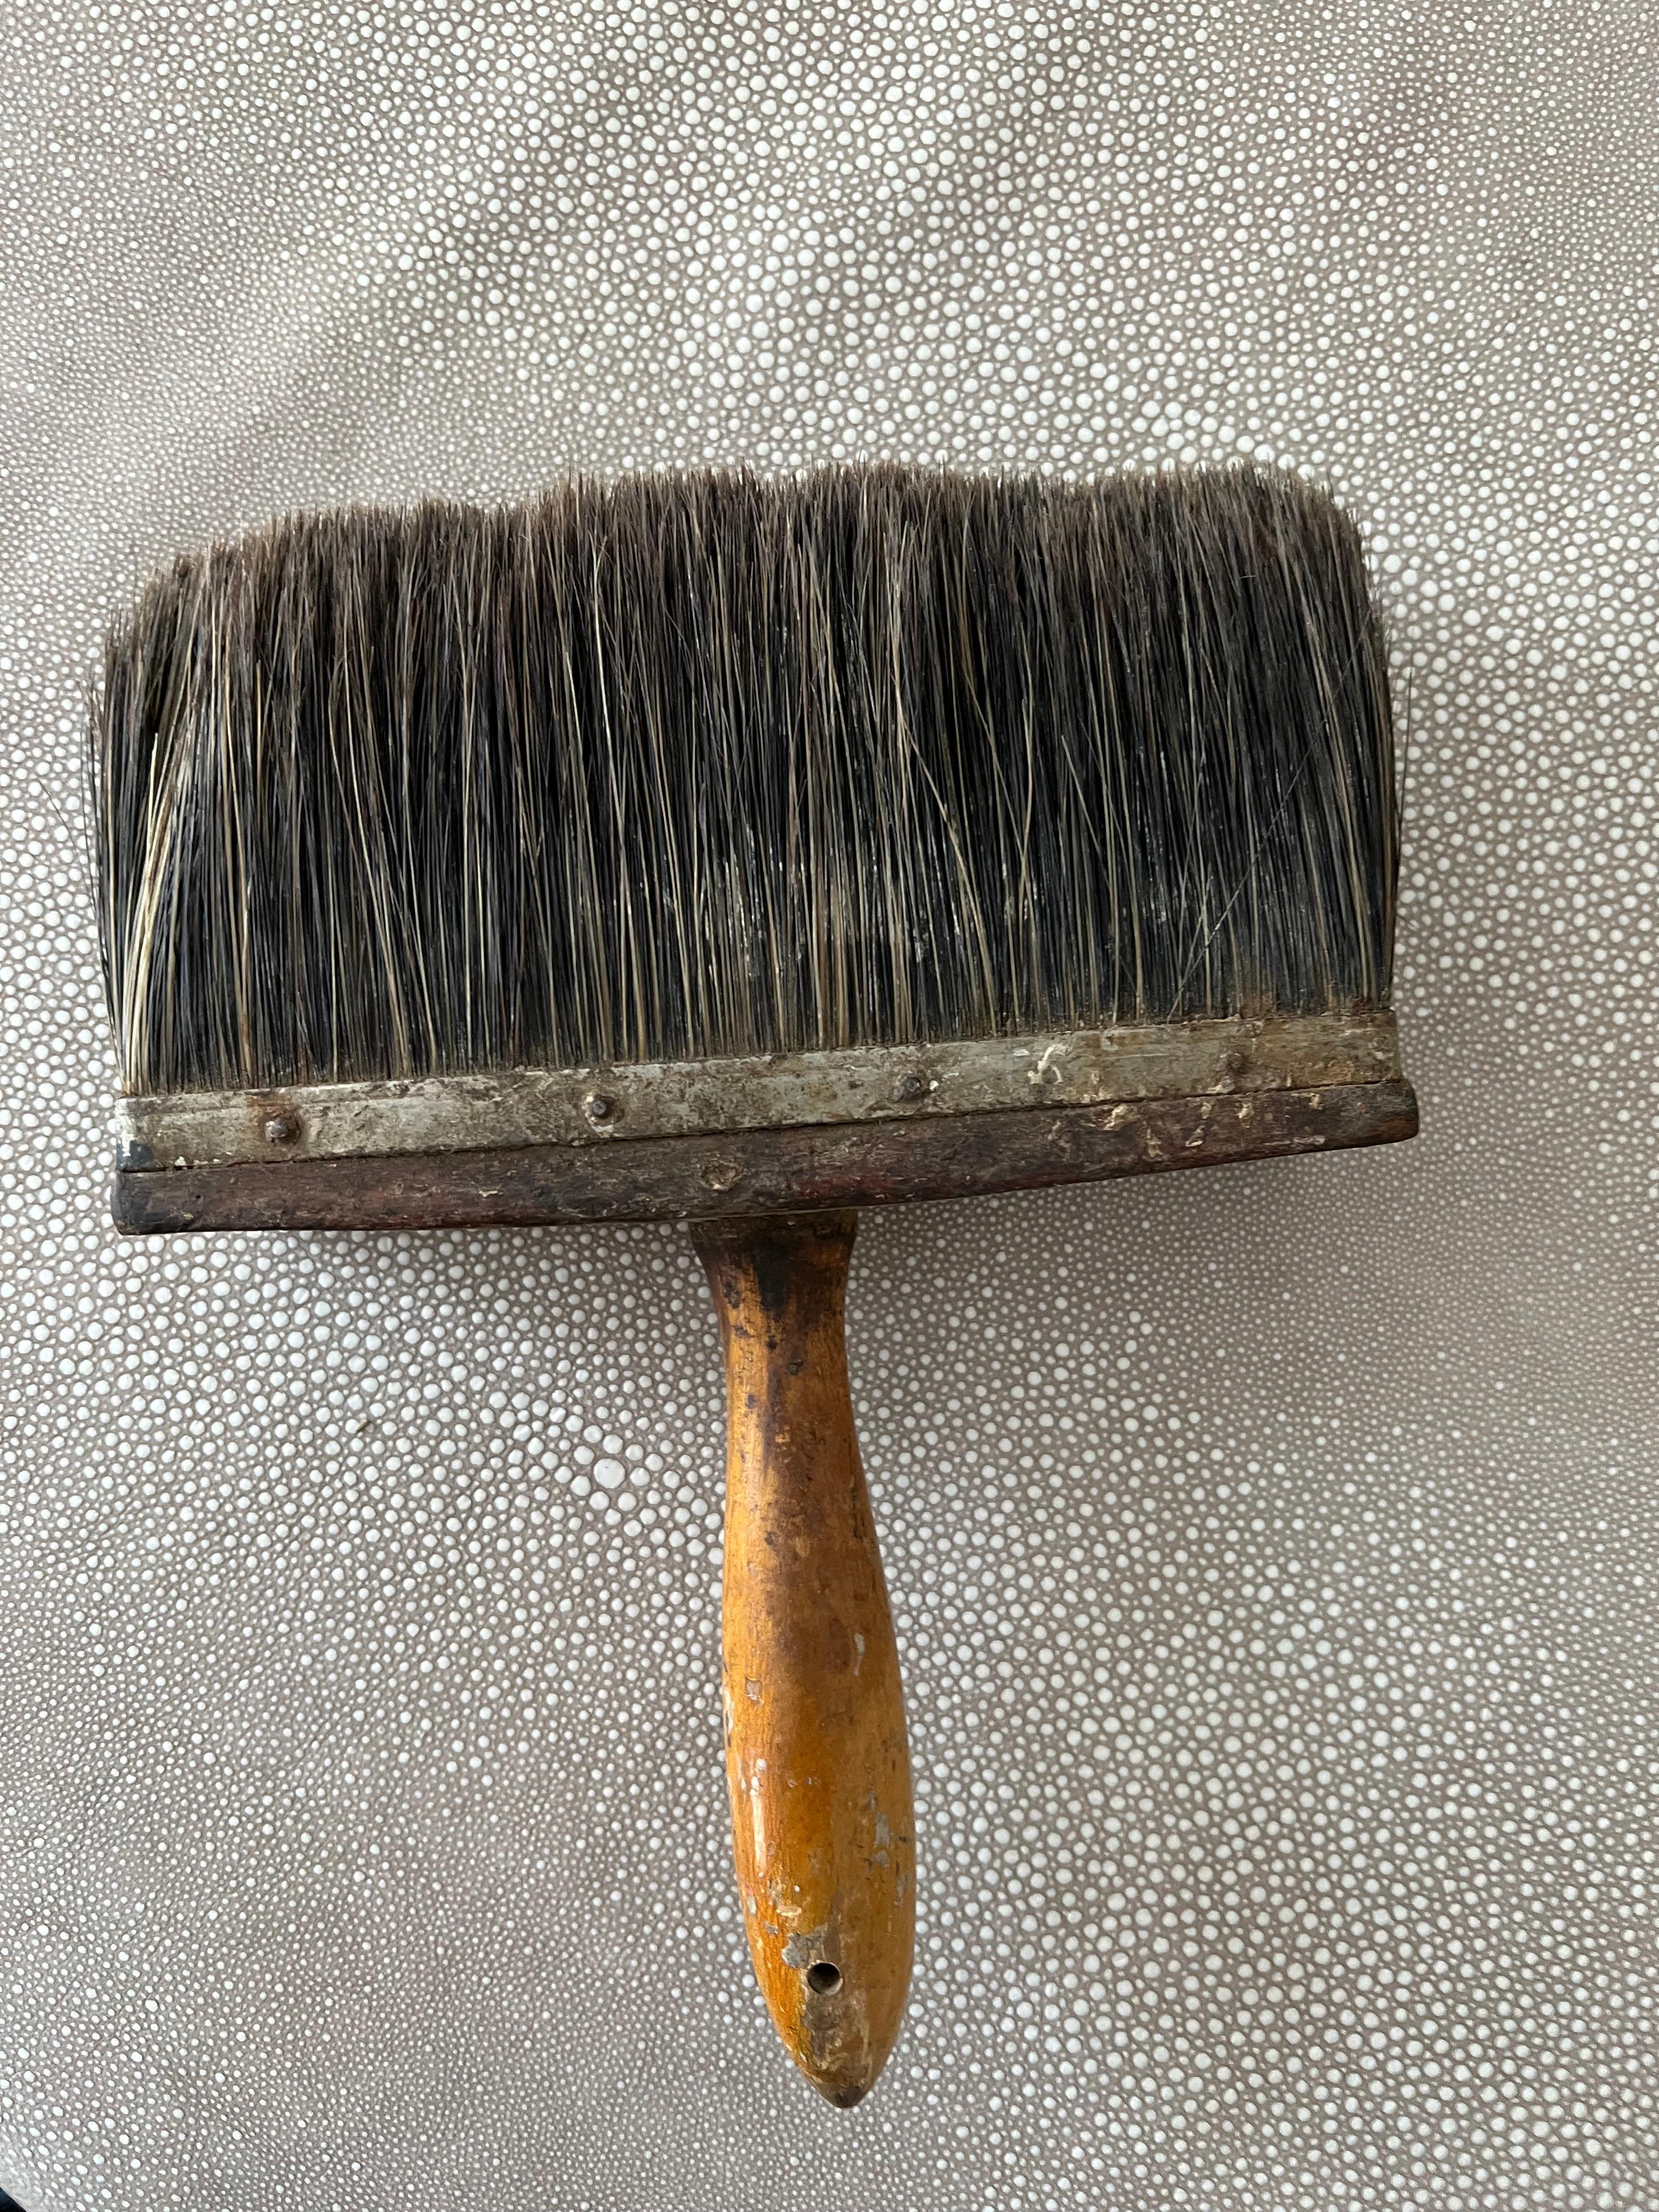 antique paintbrush